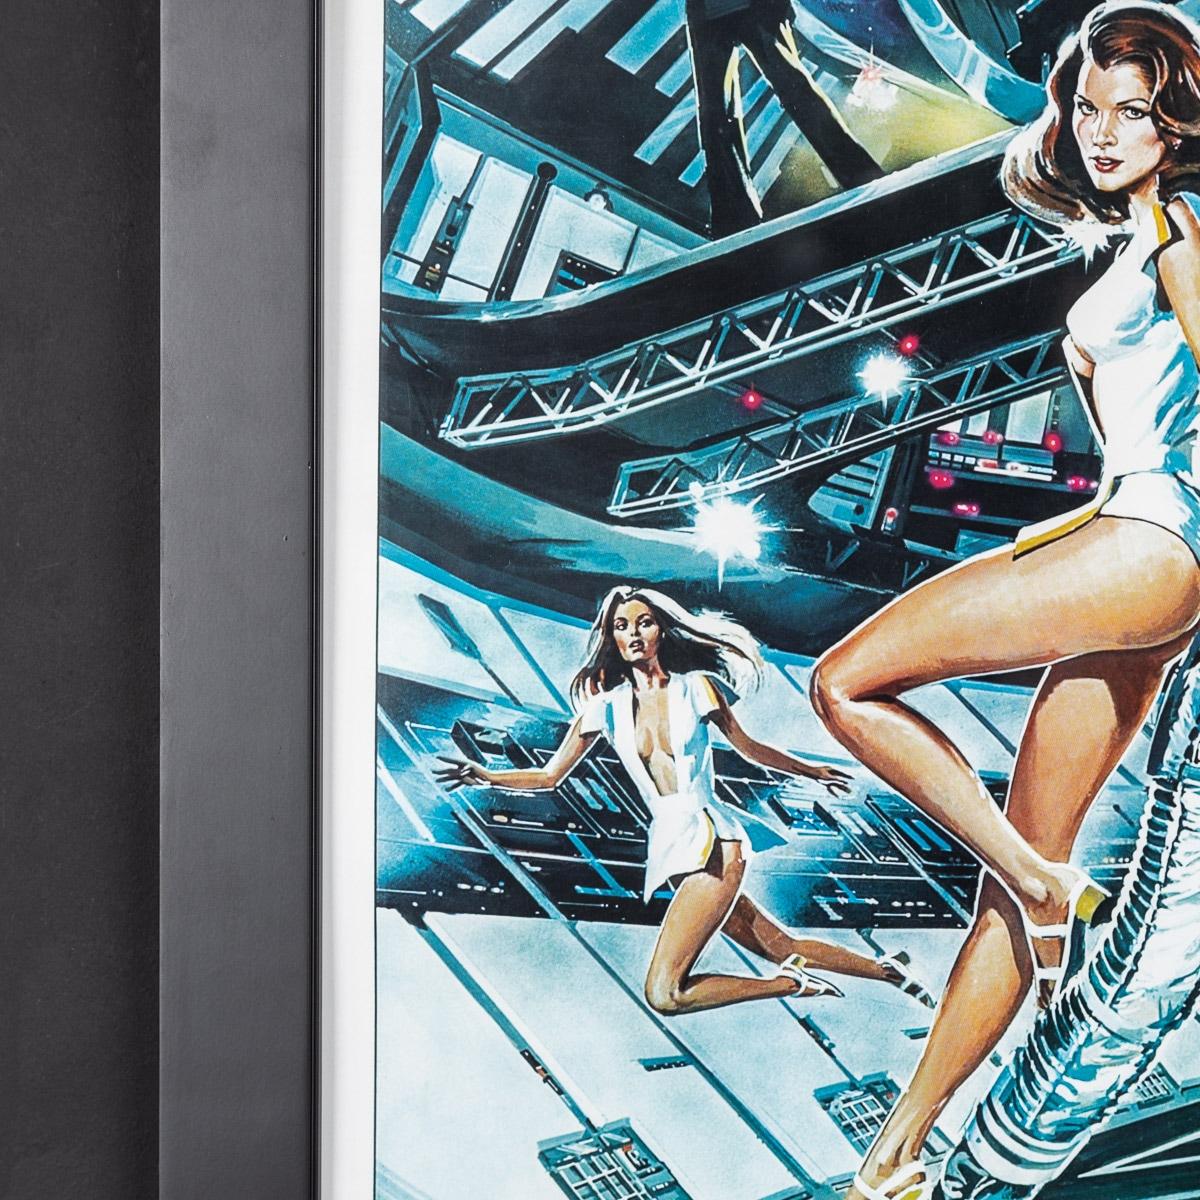 Paper Original James Bond 007 'Moonraker' Film Poster, Signed by Roger Moore, c.1979 For Sale